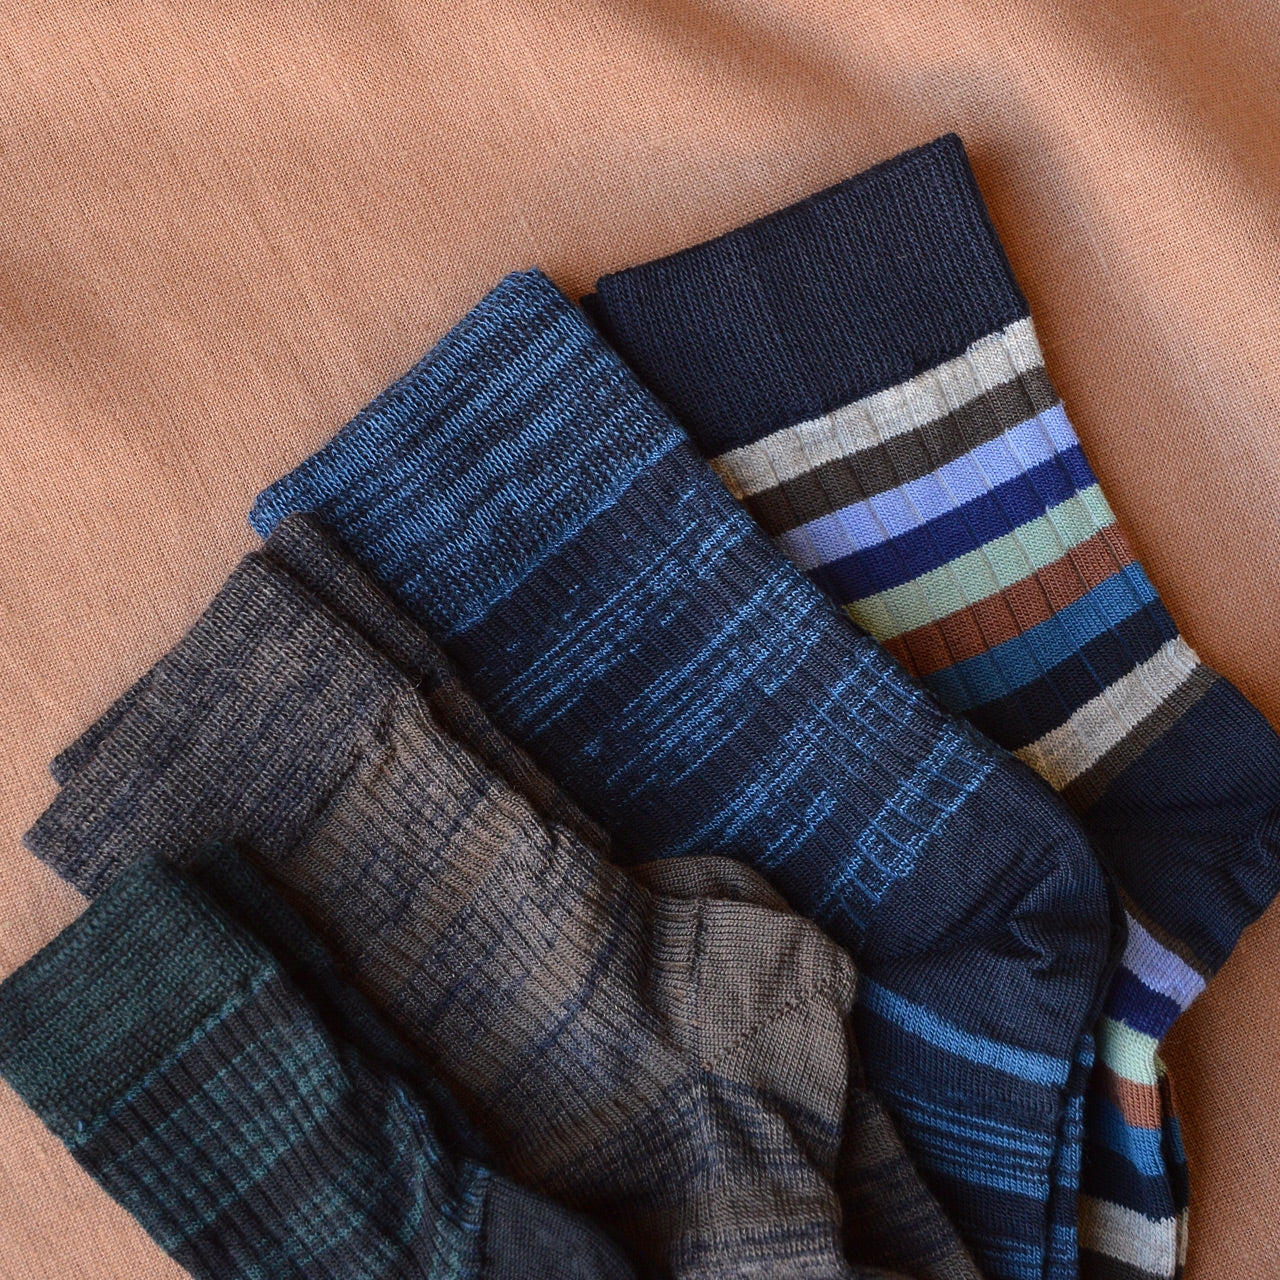 FUB Merino Wool Socks - Stripes (Kids)